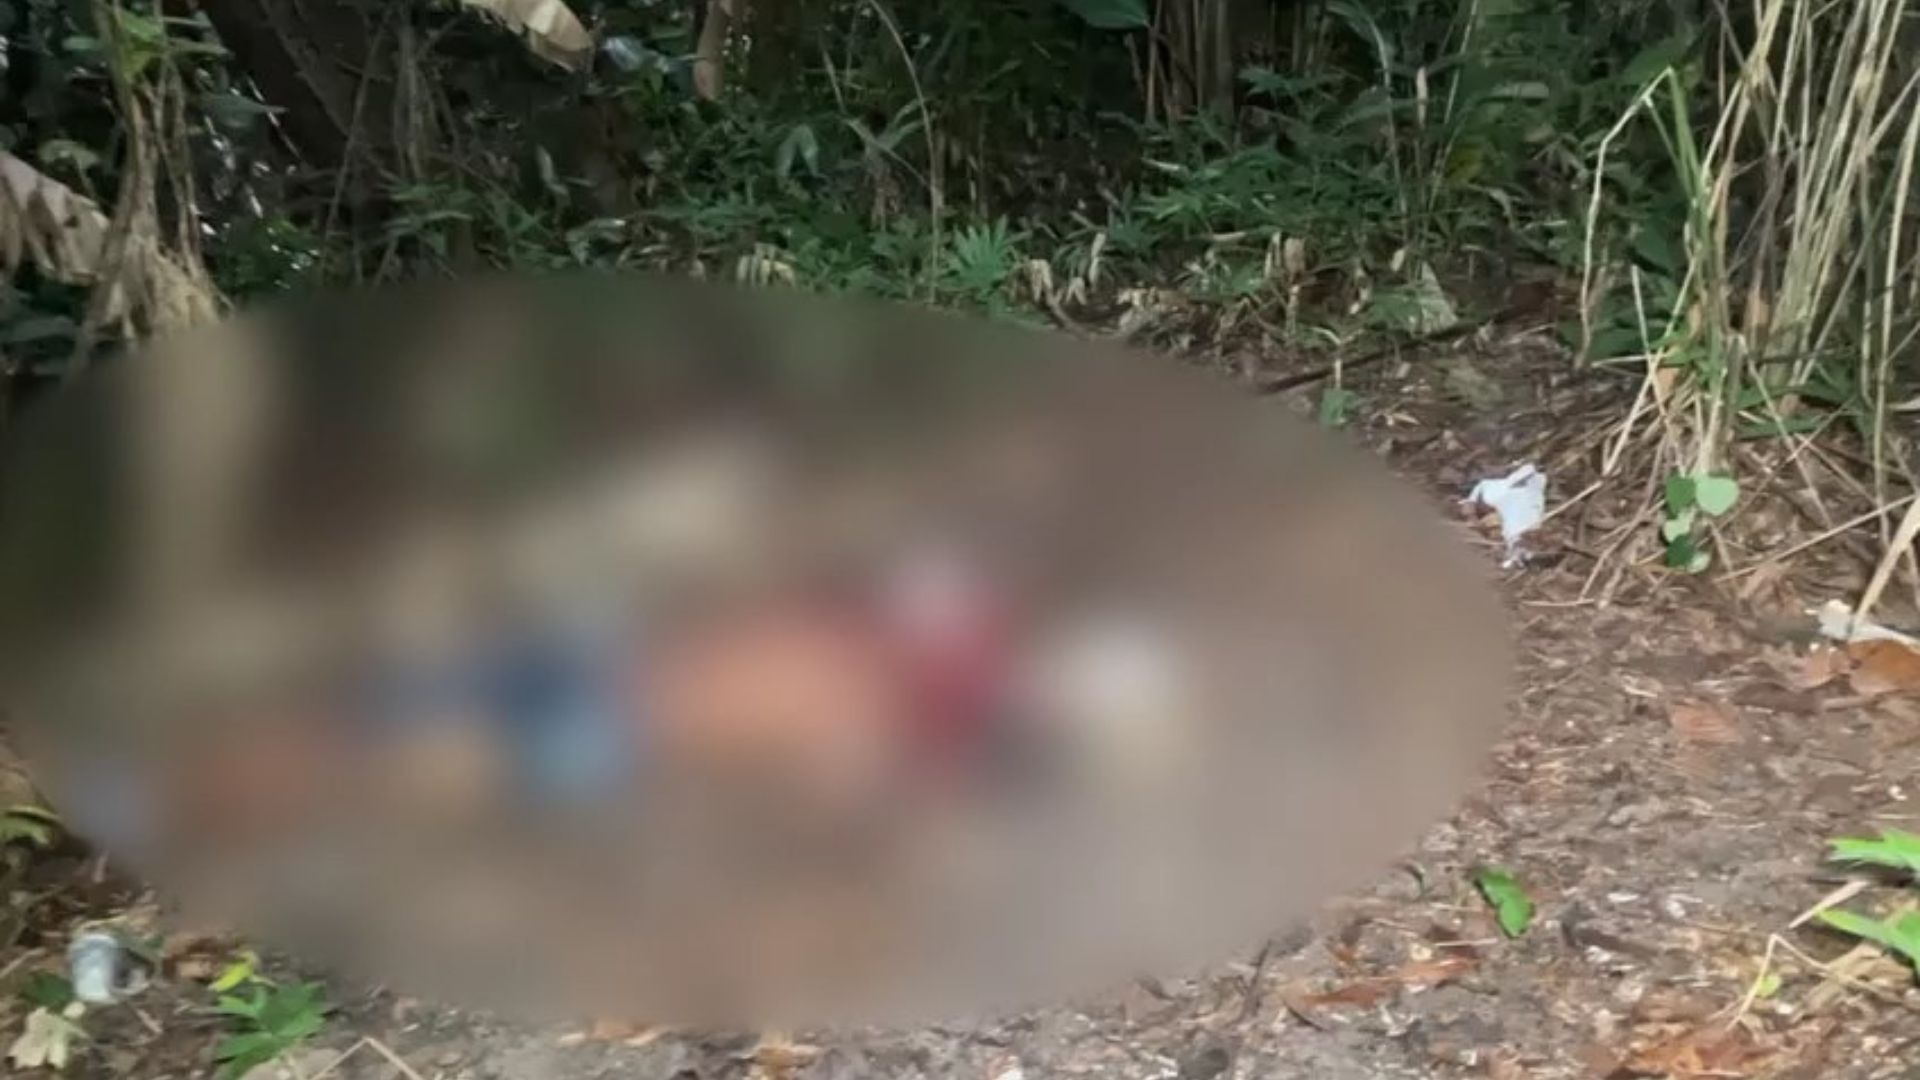 Homem foi jogado em uma área de mata - Foto: Reprodução/WhatsApp